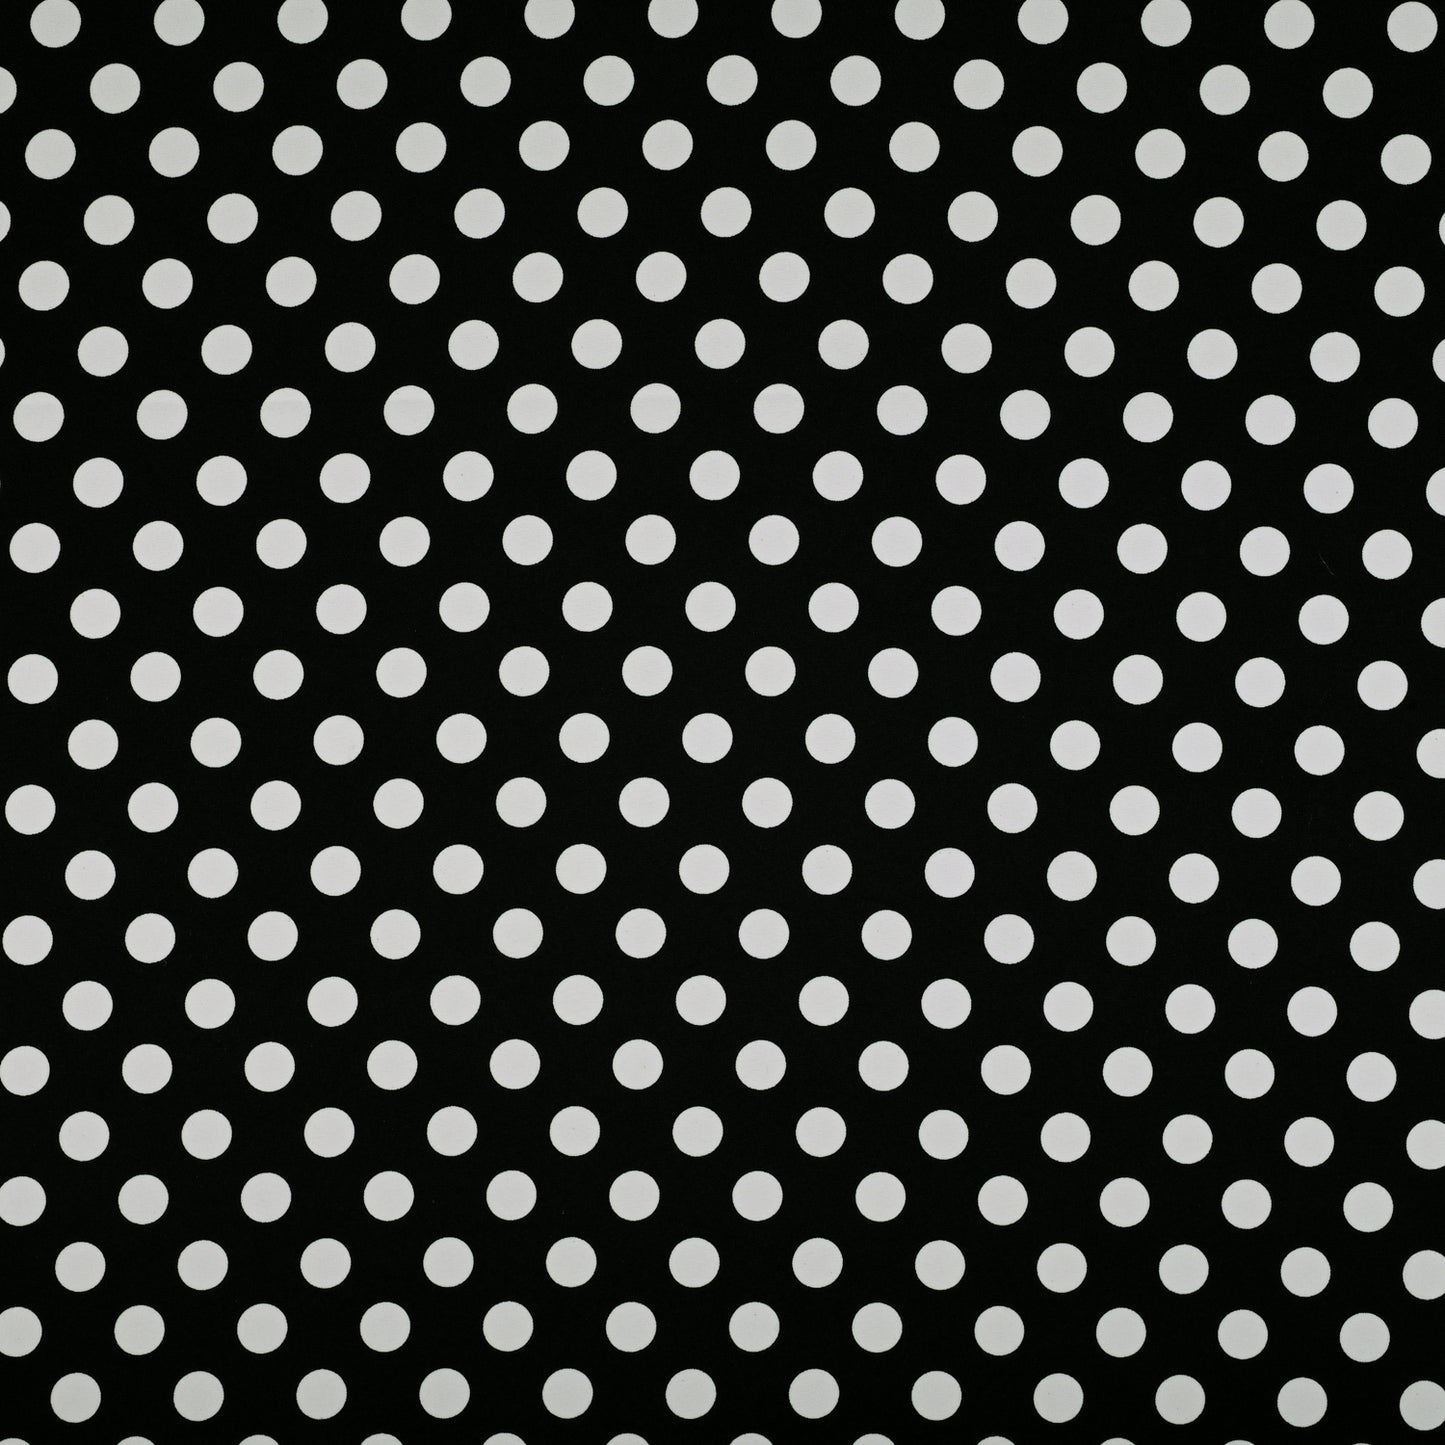 Printed Mini Matt White Dots on Black